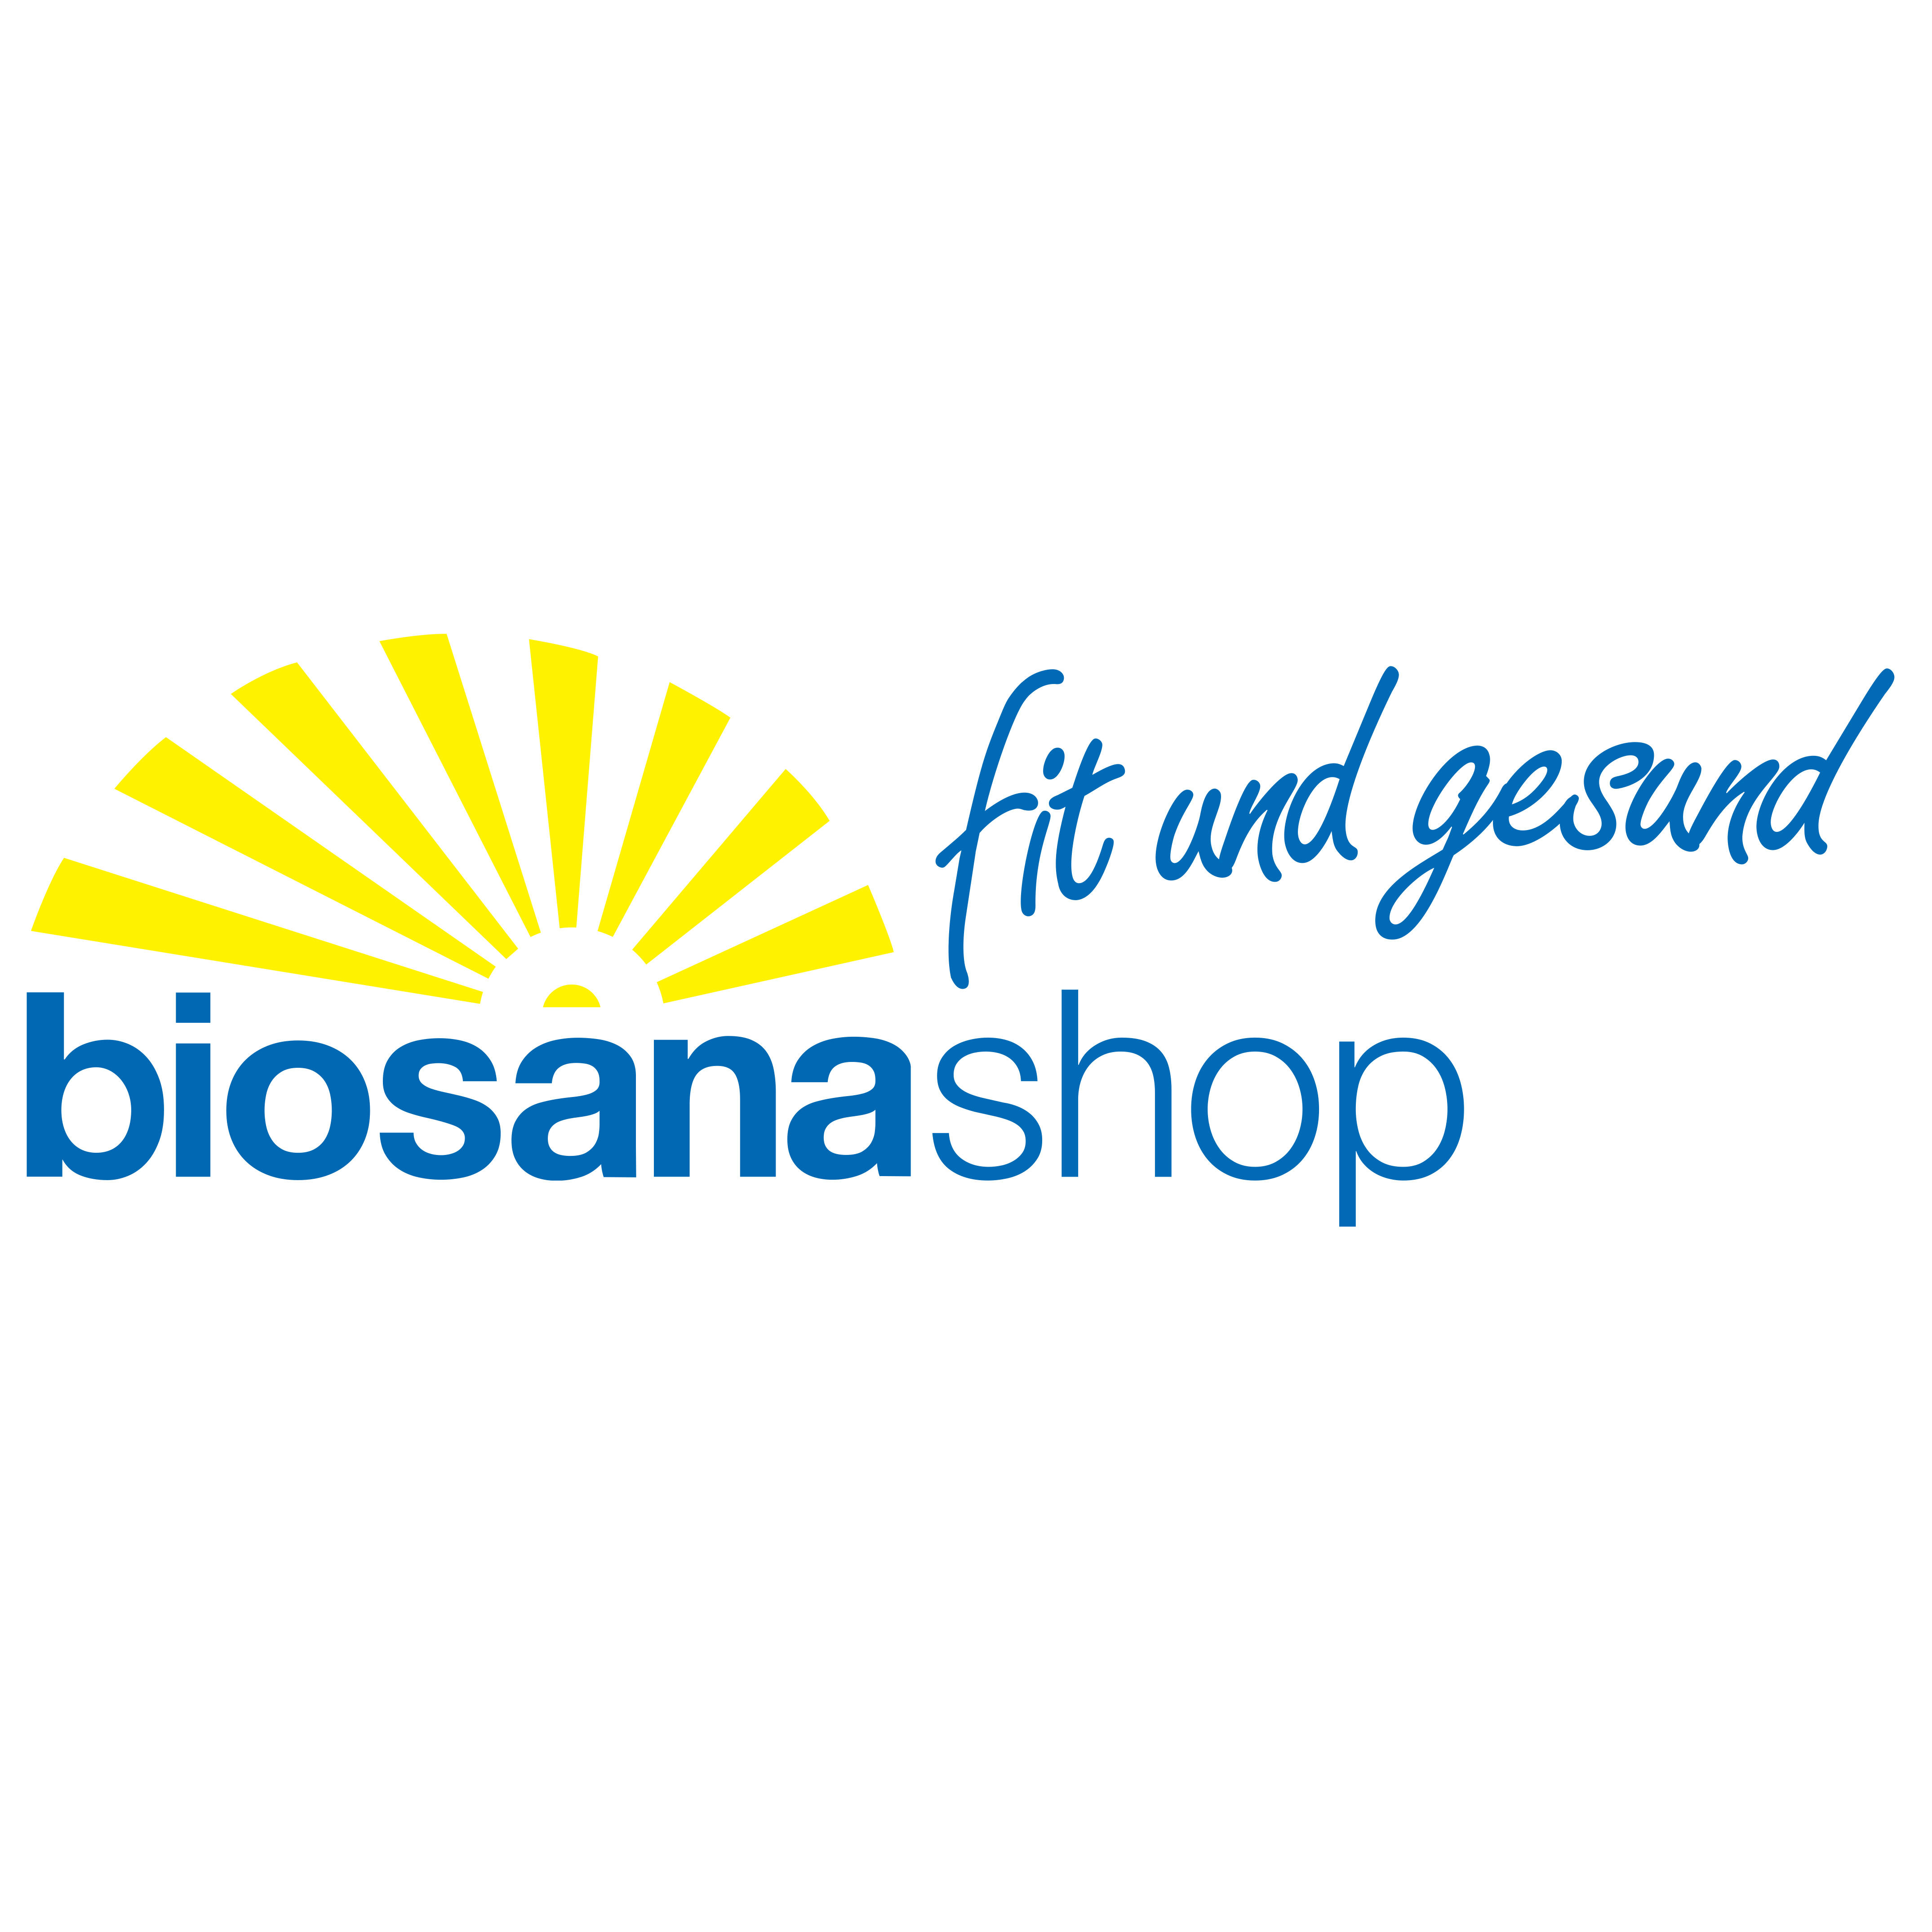 biosanashop Logo